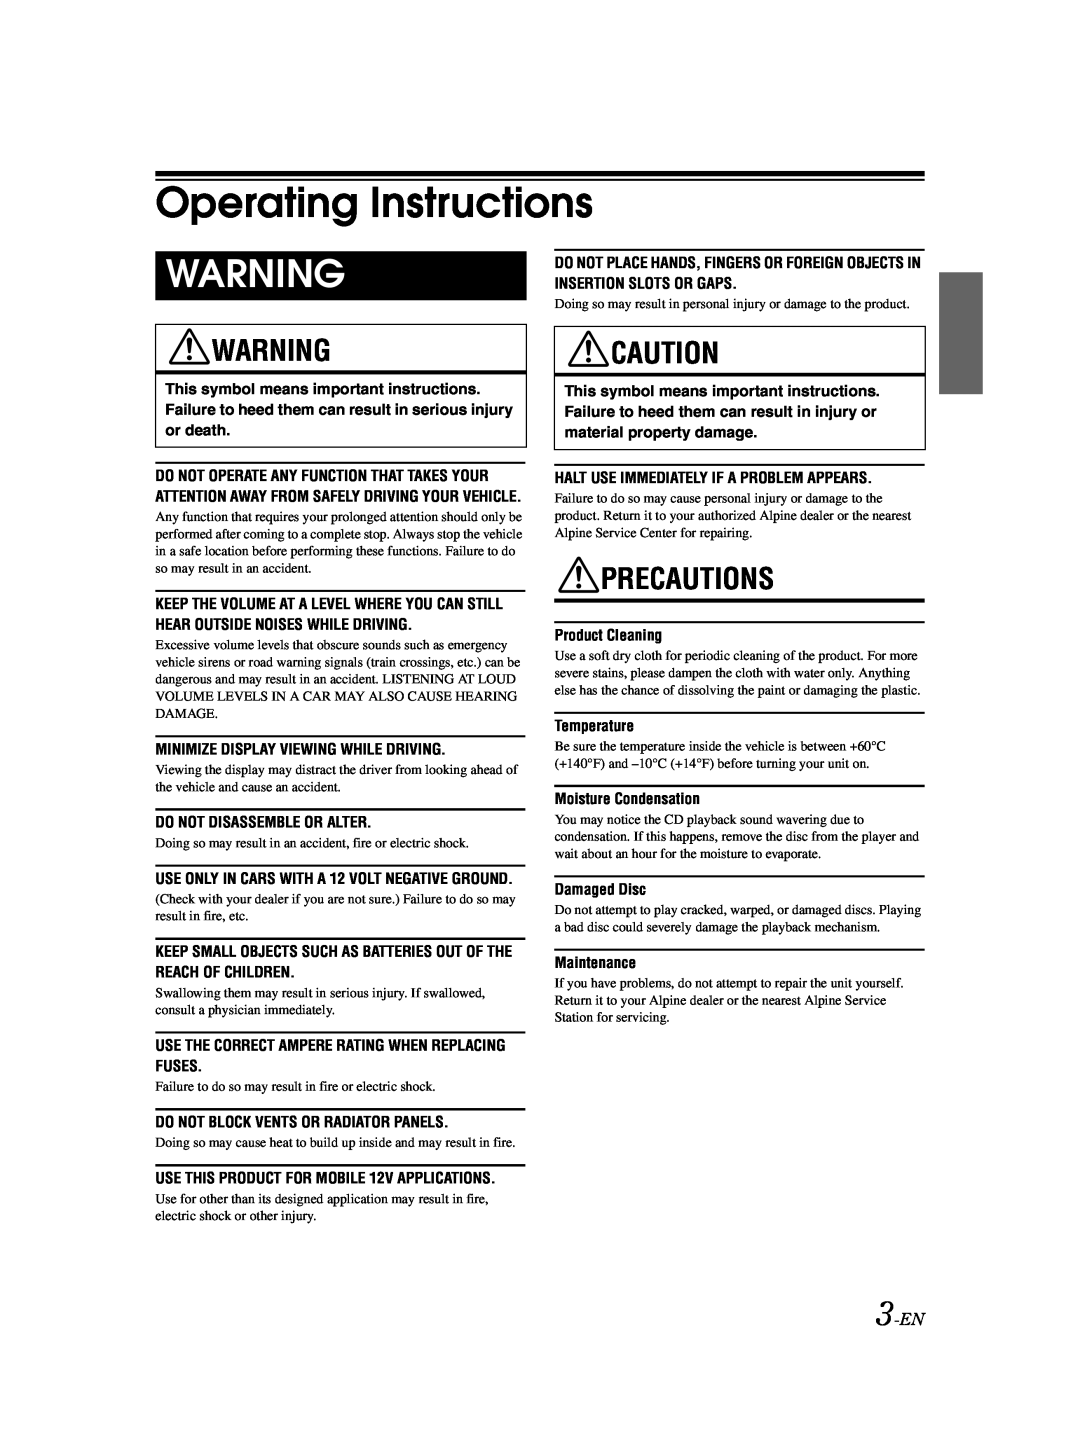 Alpine CDA-9883 owner manual Operating Instructions, Precautions, 3-EN 